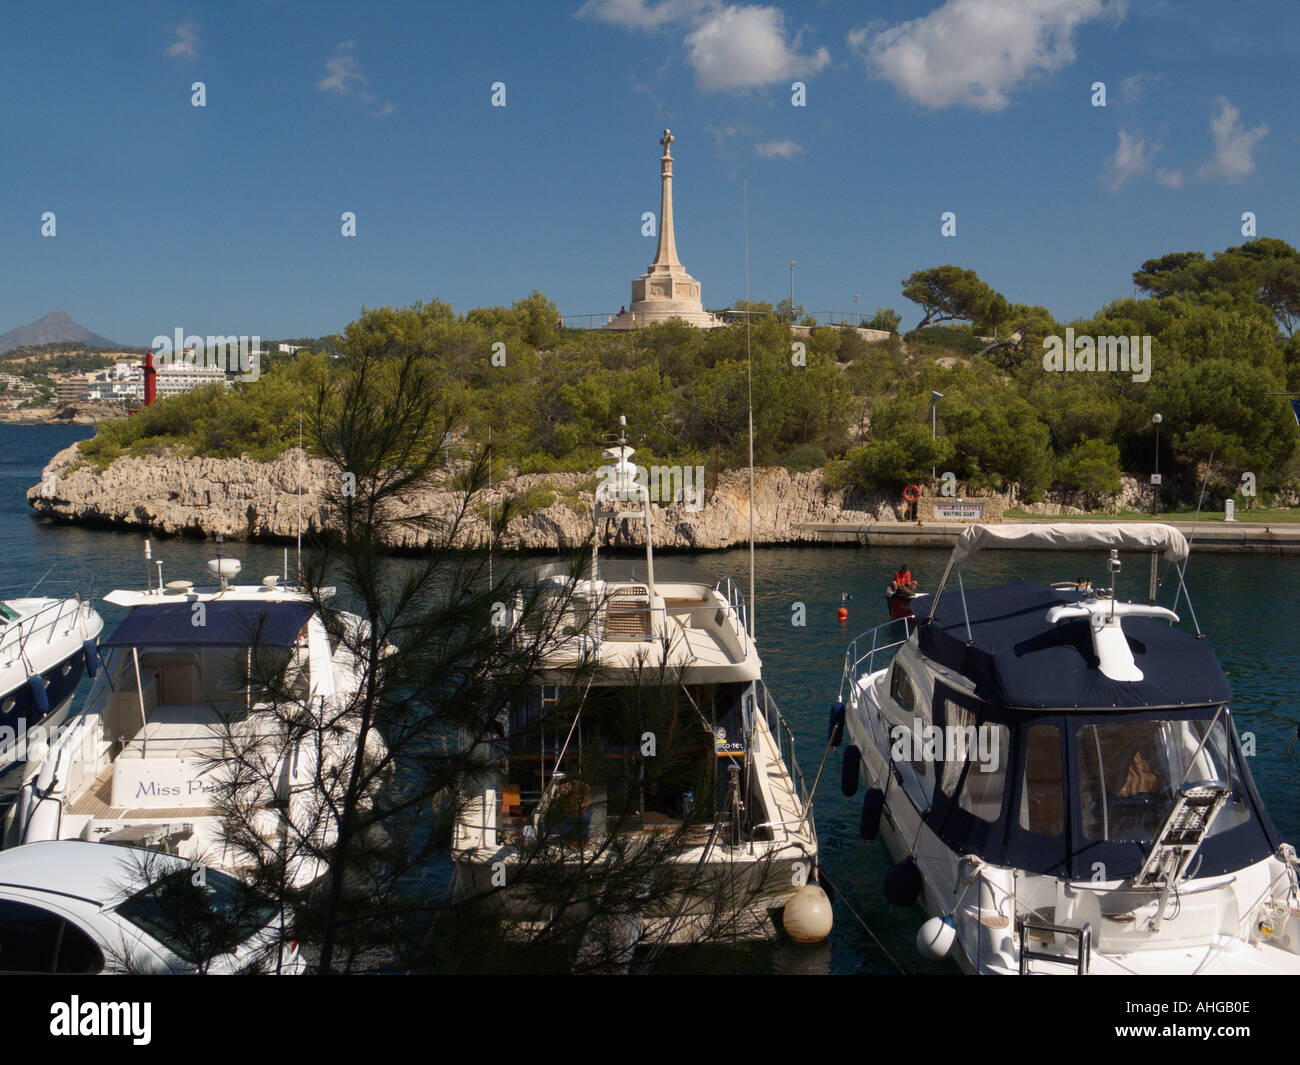 Santa Ponsa Monument and marina, Santa Ponsa Bay, Calvià, Ponent Region, Majorca, Spain Stock Photo